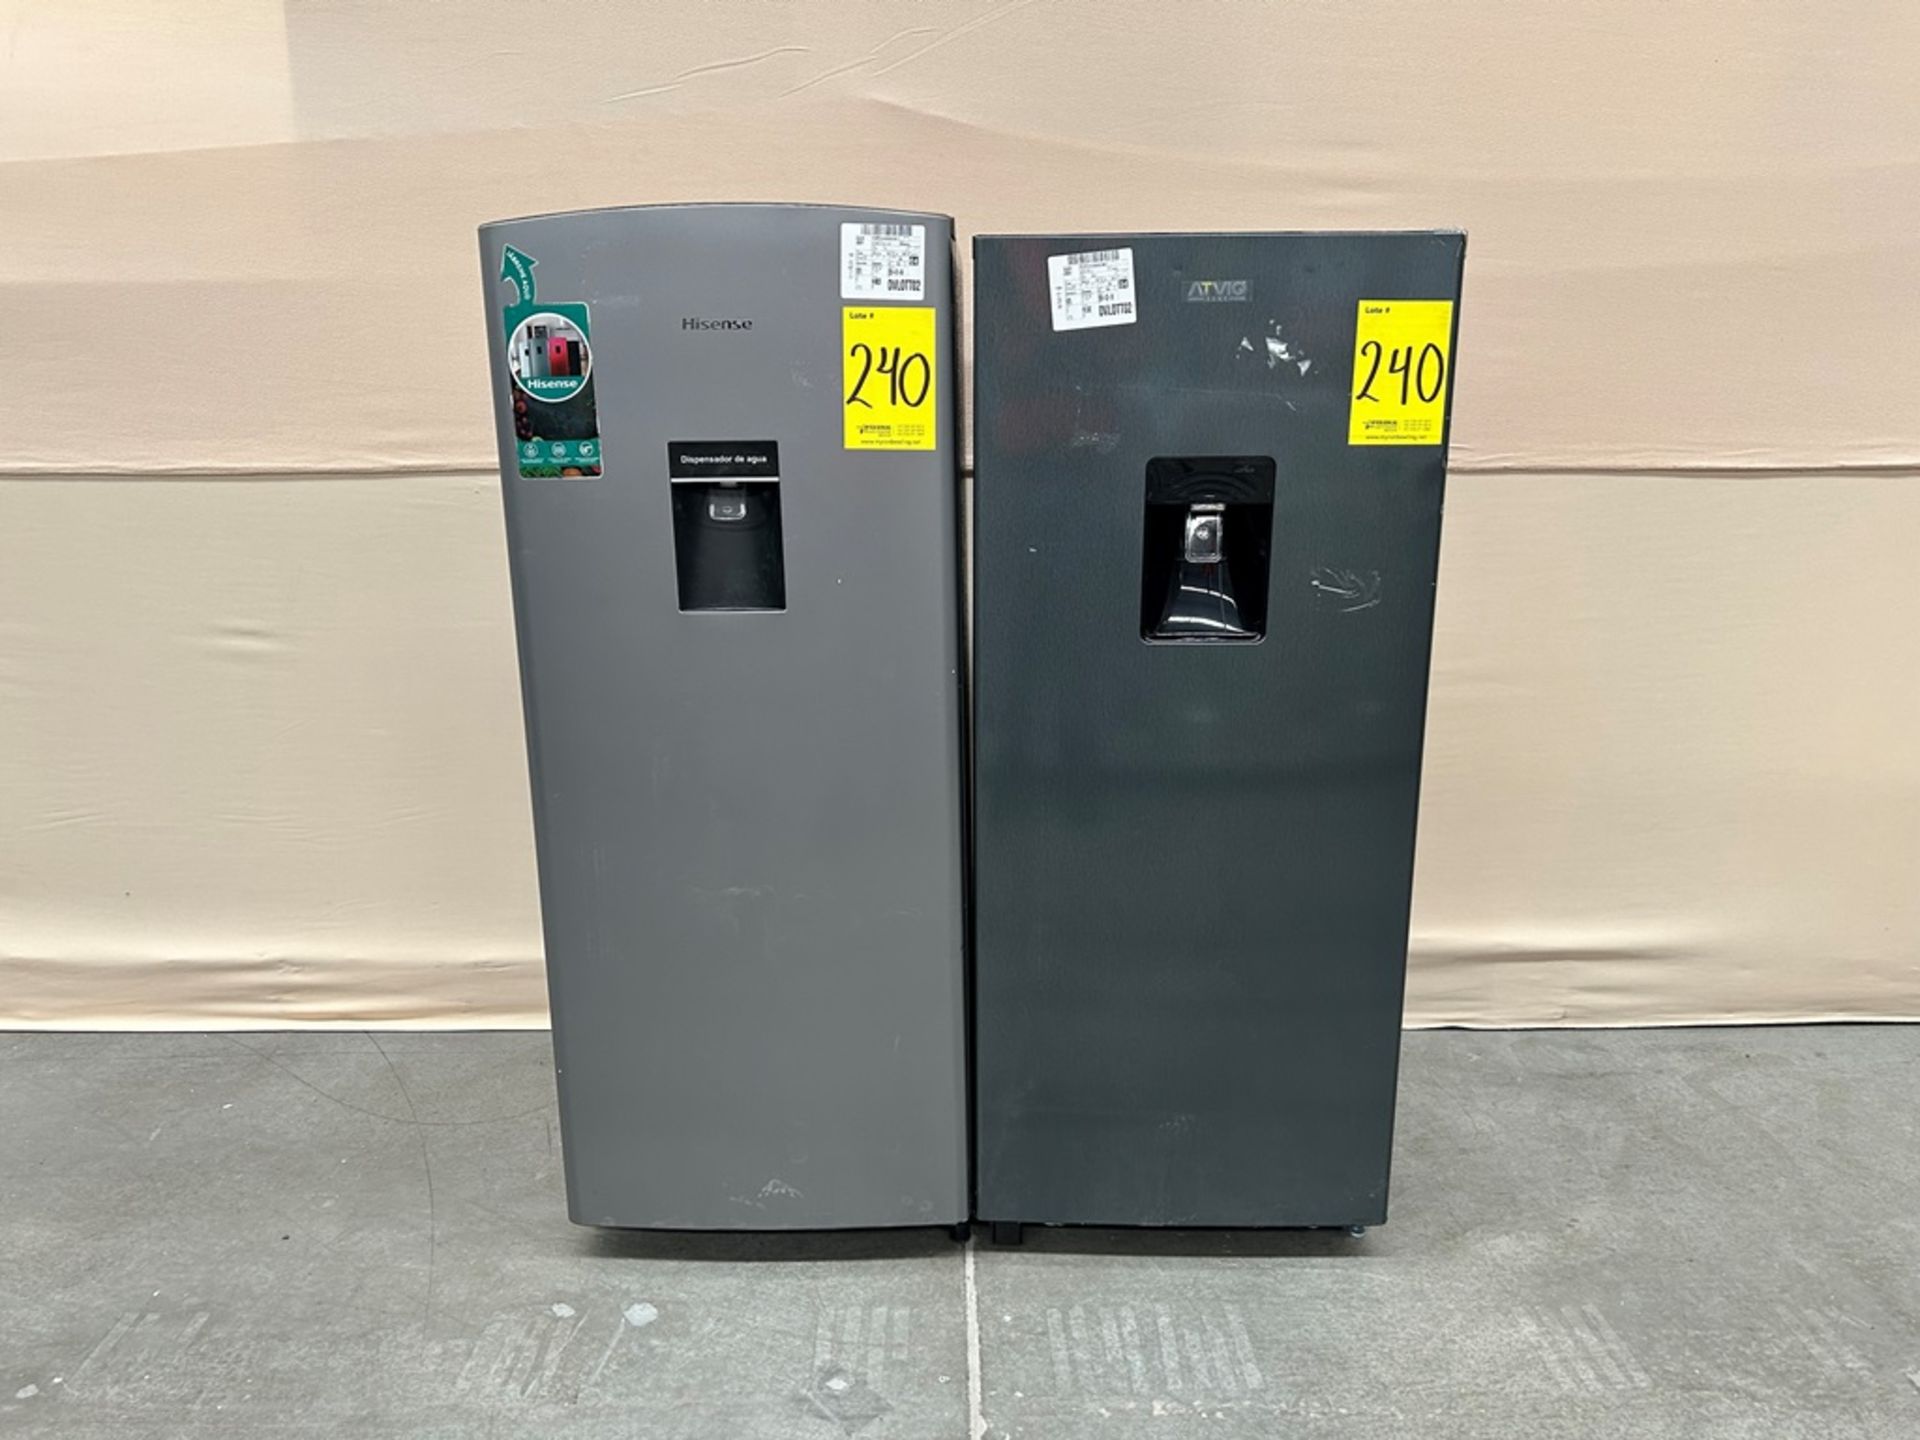 Lote de 2 refrigeradores contiene: Refrigerador con dispensador de agua Marca HISENSE, Modelo RR6D6